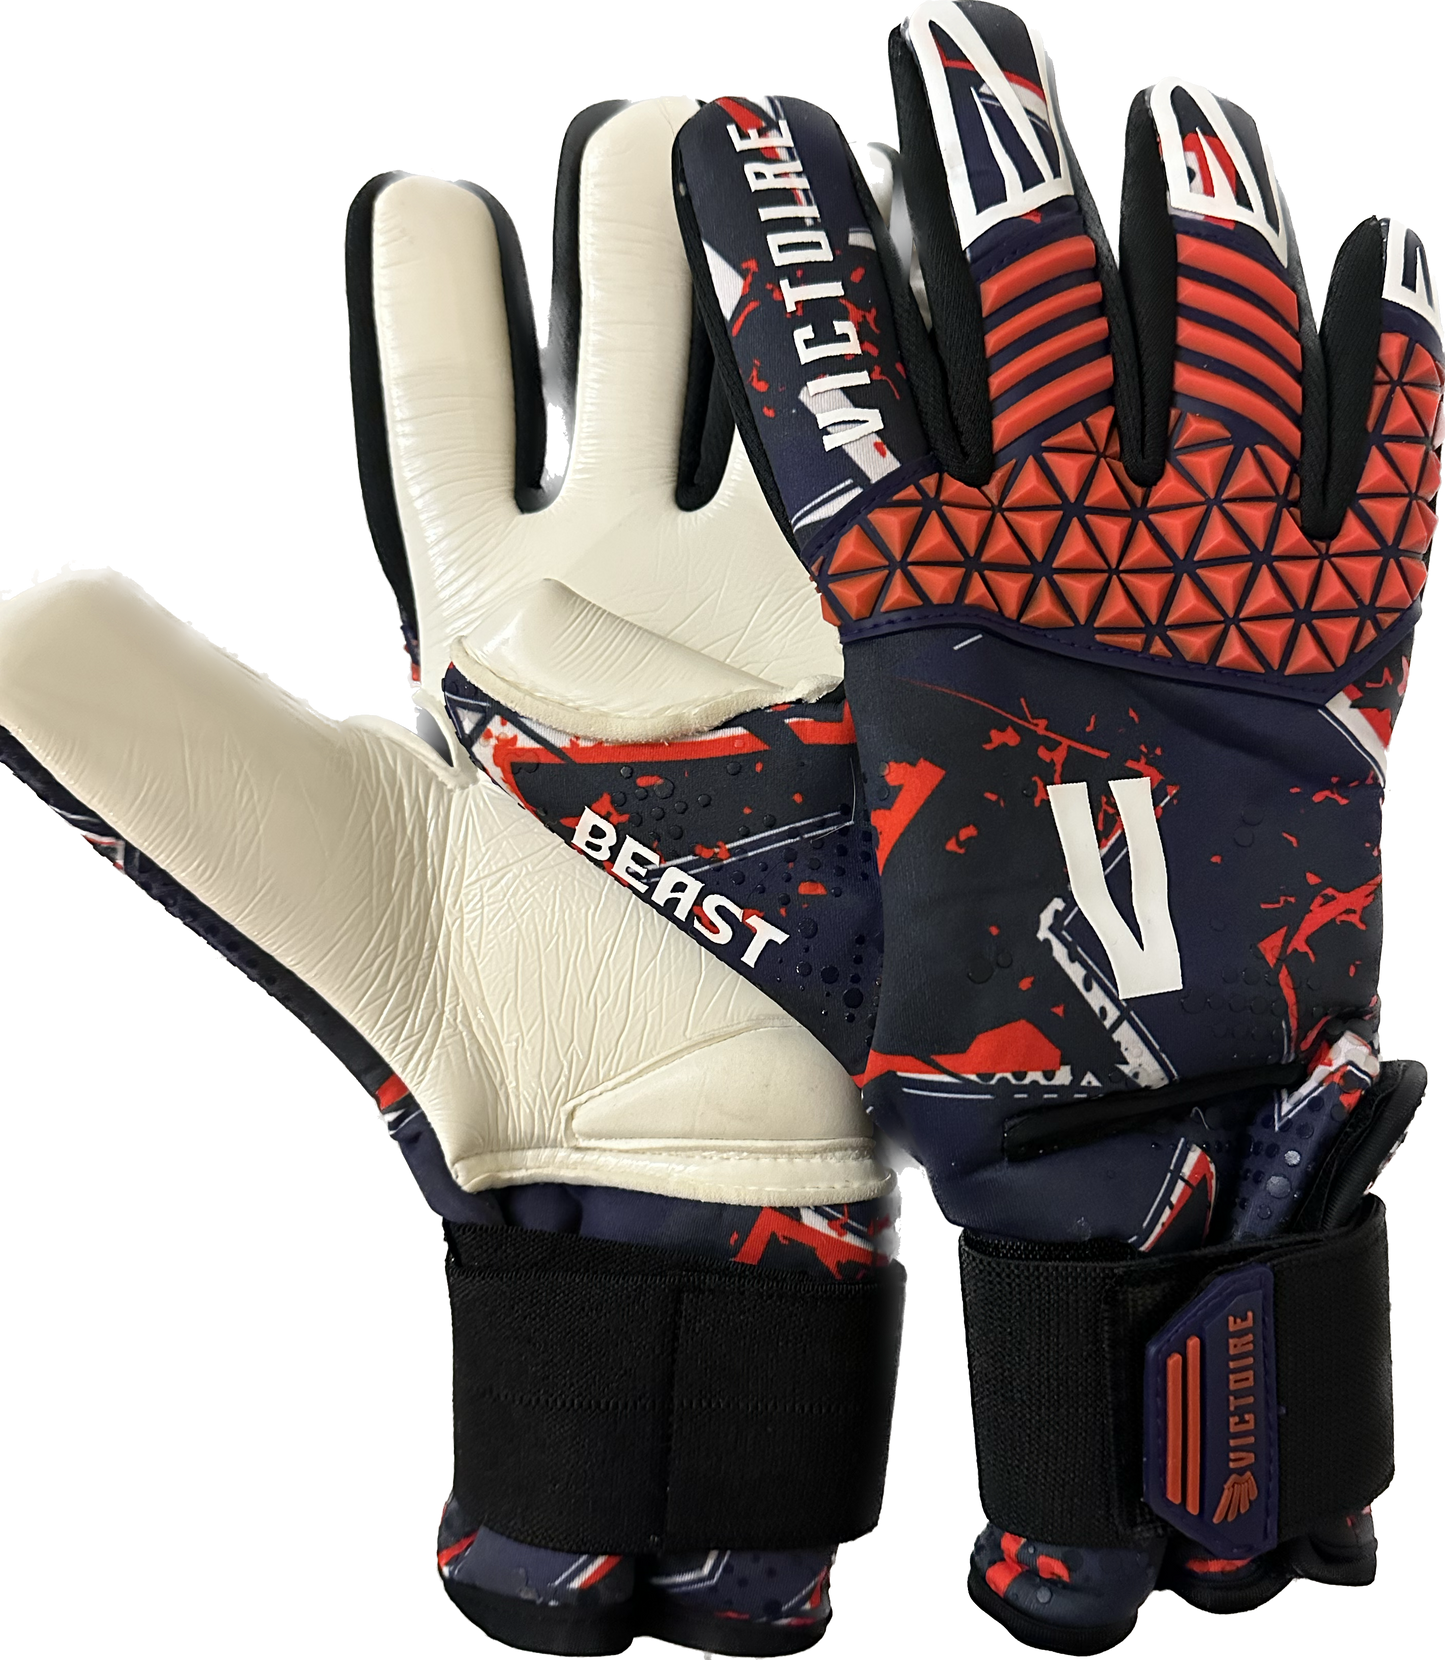 Victoire Black, white, red Neoprene Goalkeeper Gloves